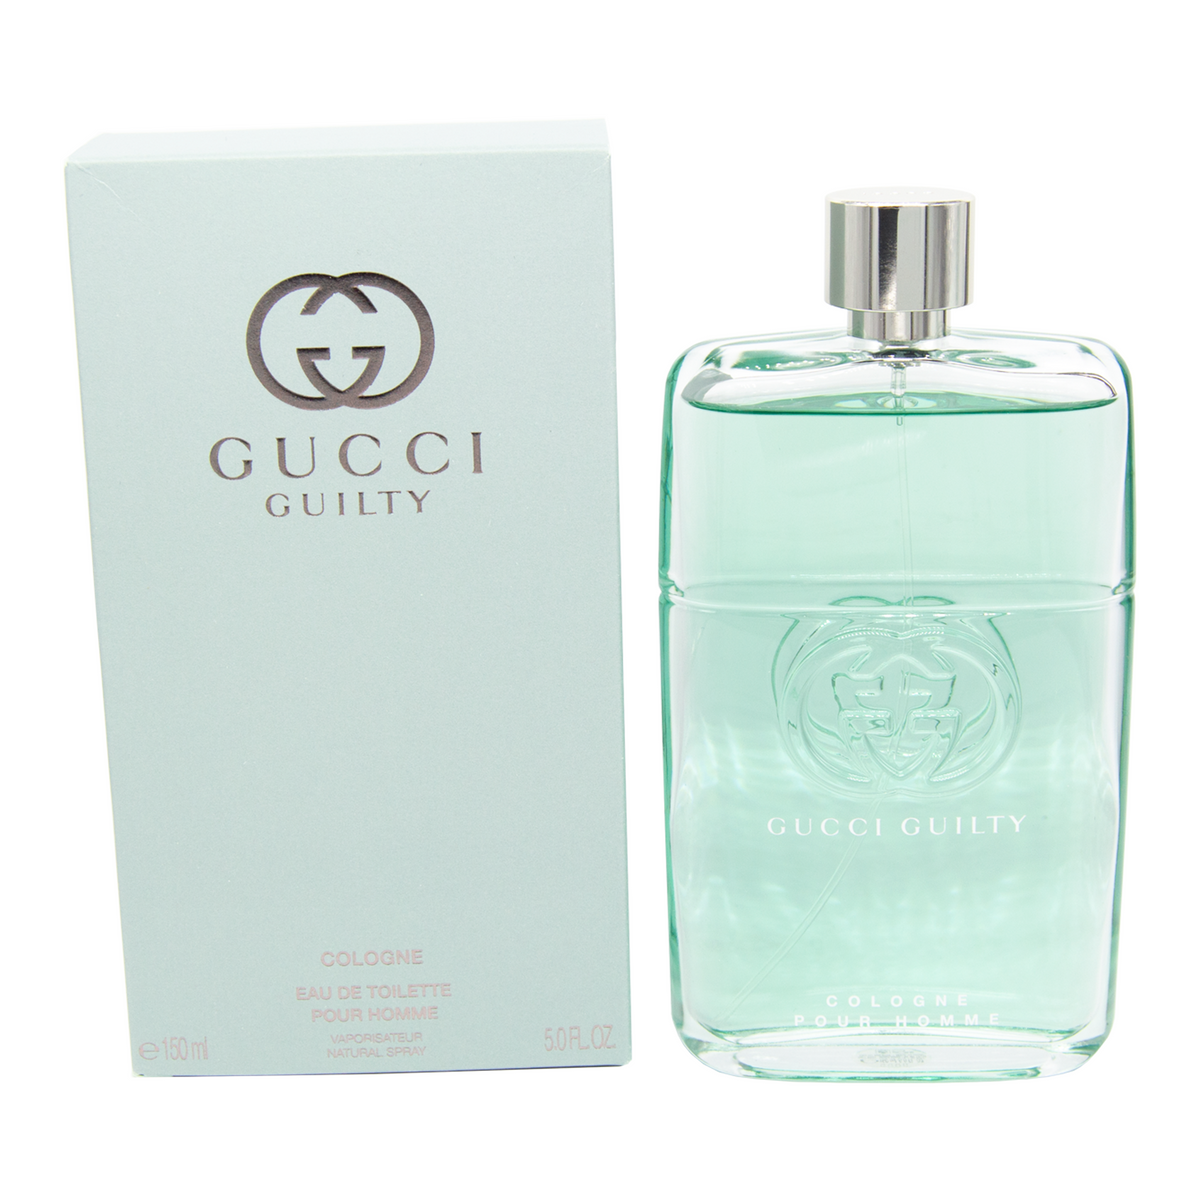 Gucci Guilty Cologne – Essence Fragrances Online